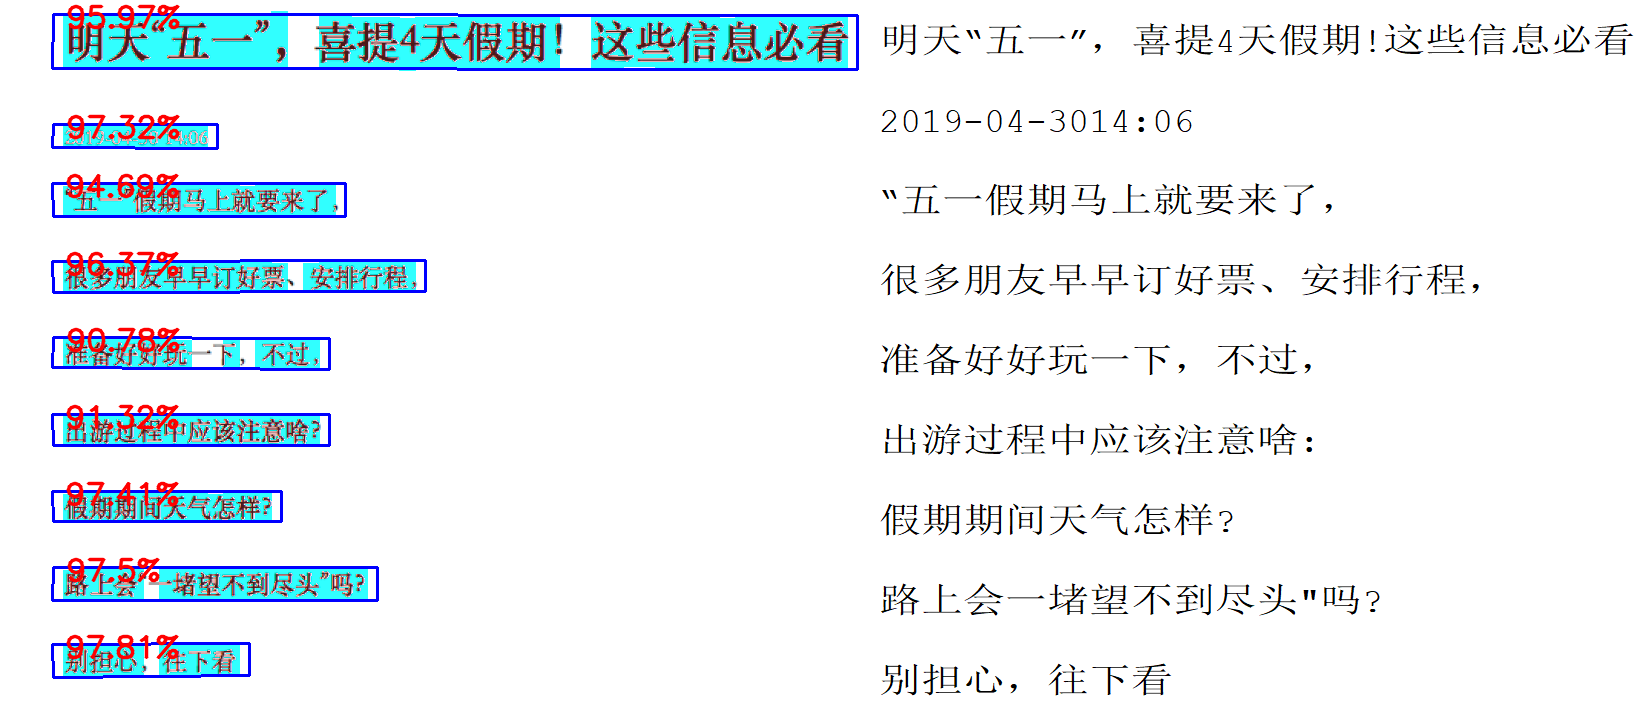 【项目实践】中文文字检测与识别项目（CTPN+CRNN+CTC Loss原理讲解）「建议收藏」